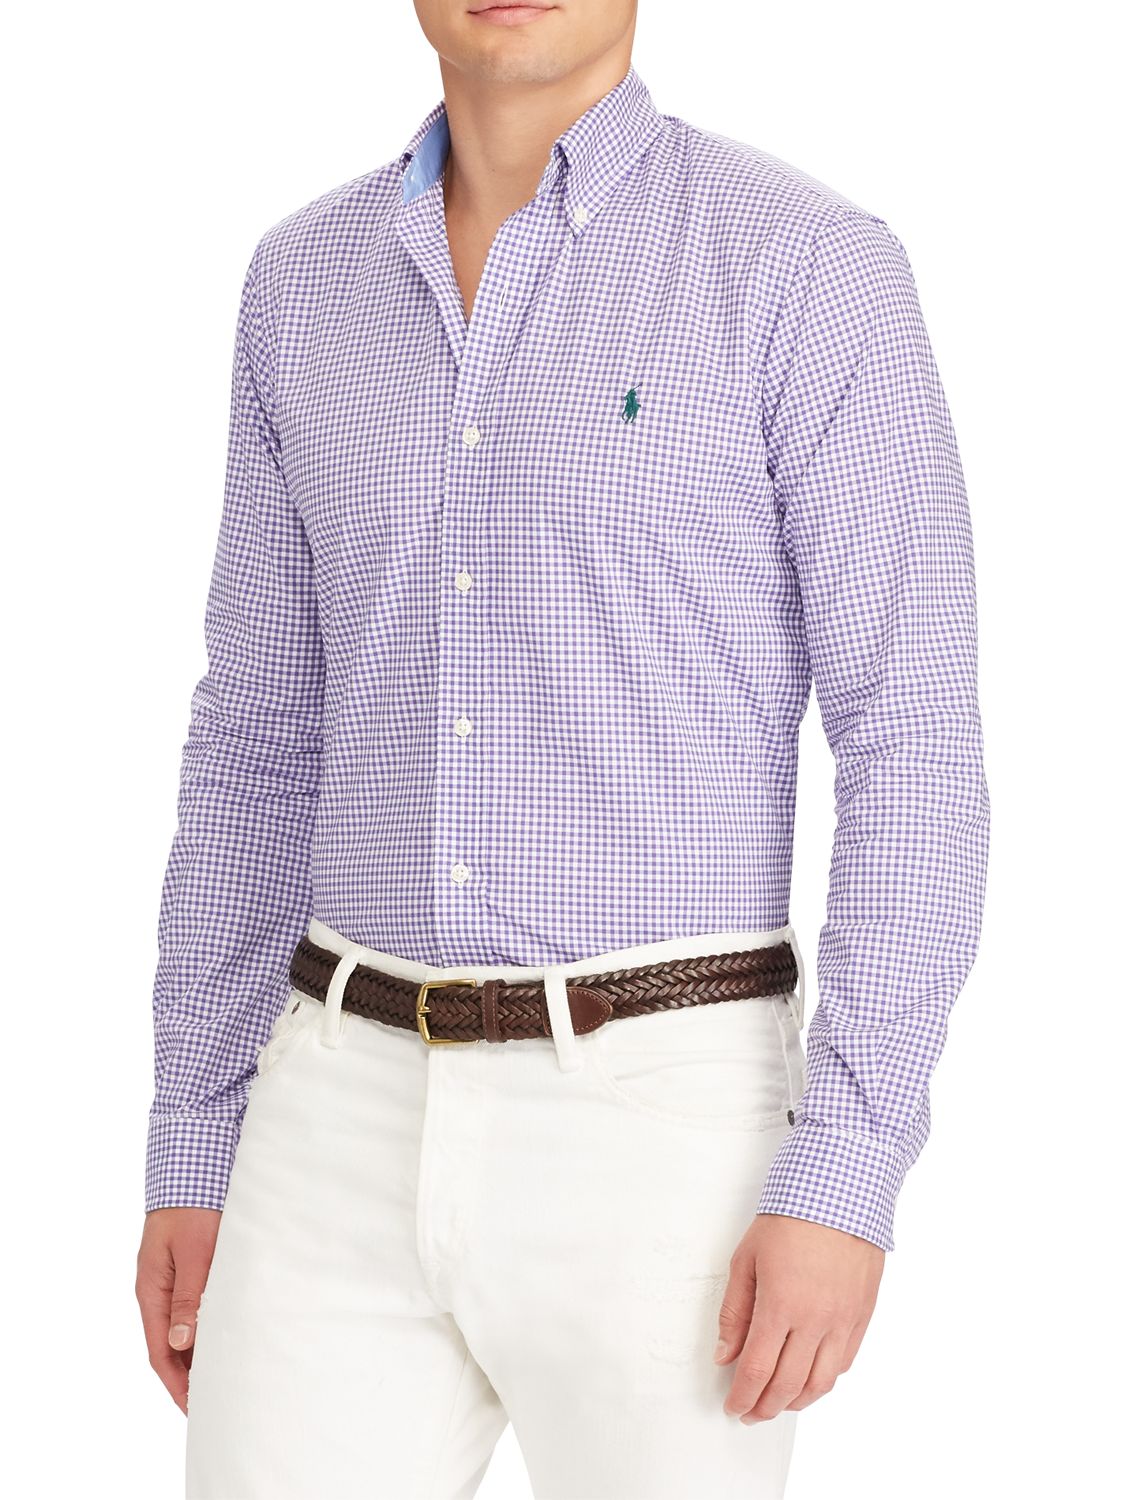 ralph lauren lilac shirt